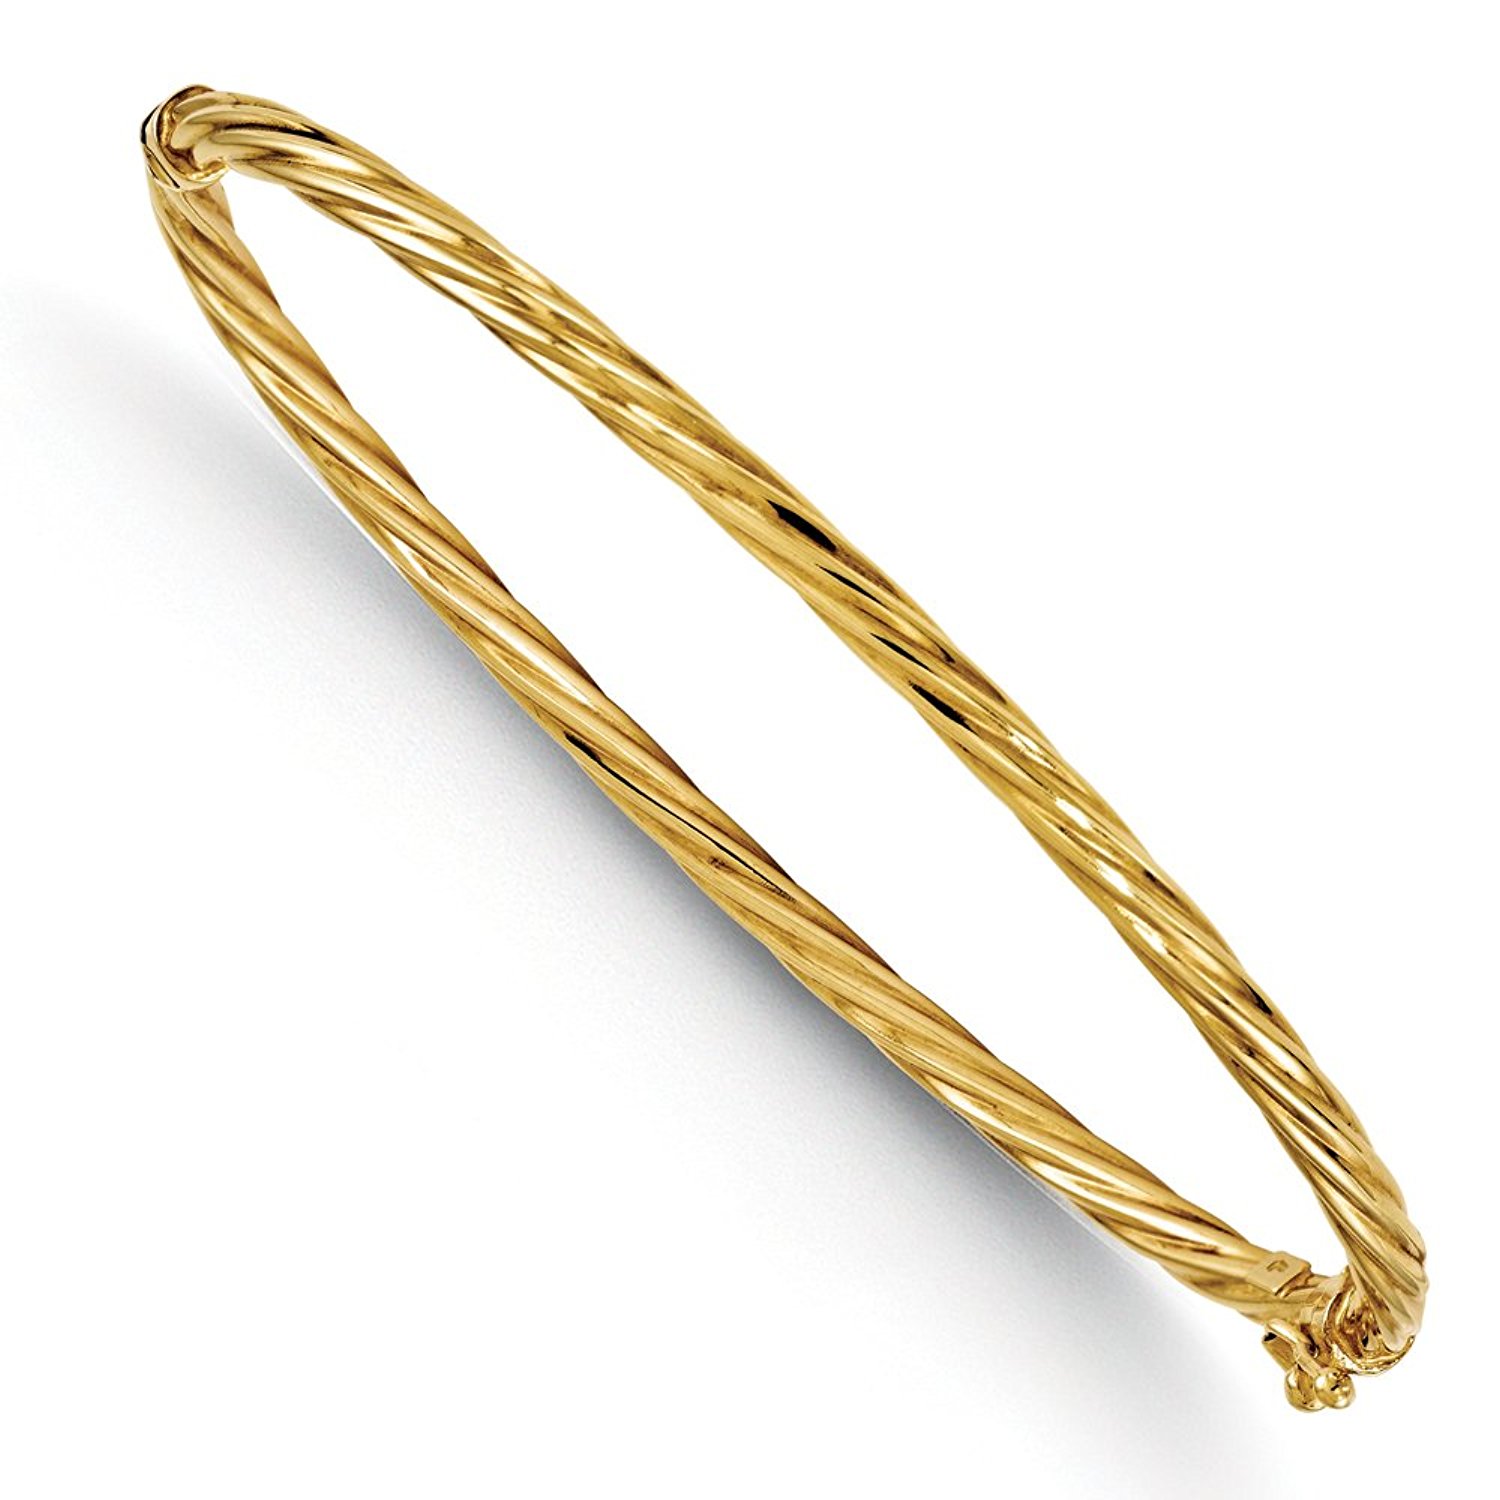 rose gold bangle bracelet amazon.com: italian 3mm twisted hinged bangle bracelet in 14k yellow gold: TVGXOCZ